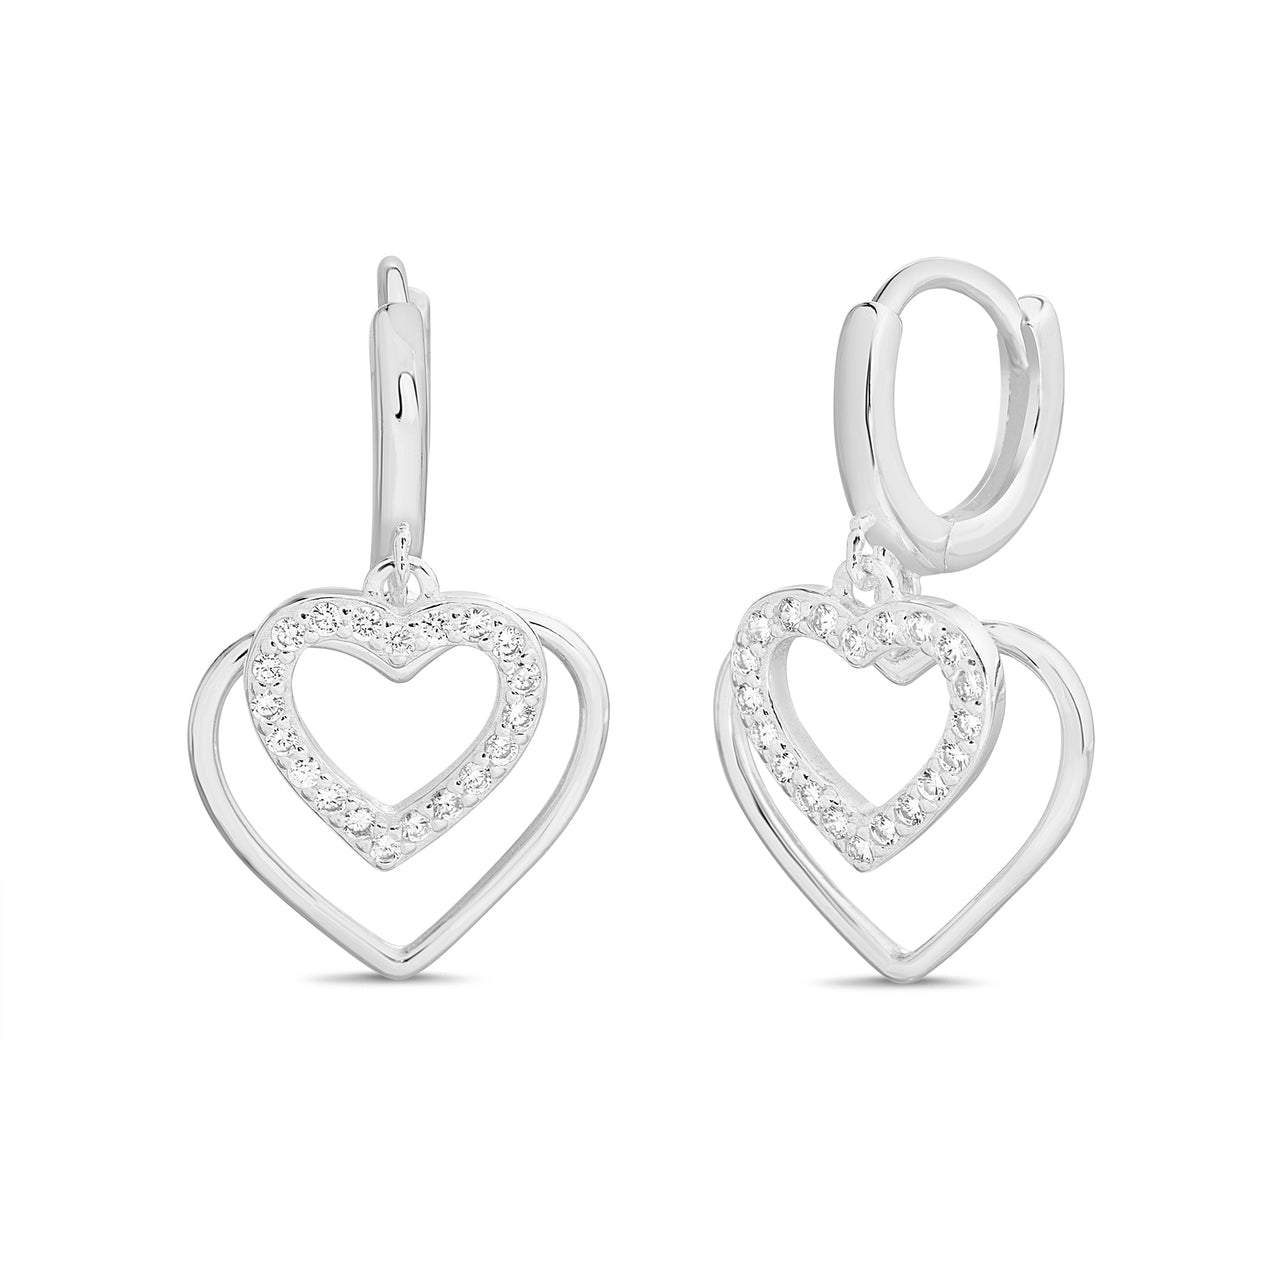 Lesa Michele Double Open Heart Dangle Earrings in Sterling Silver with Cubic Zirconia